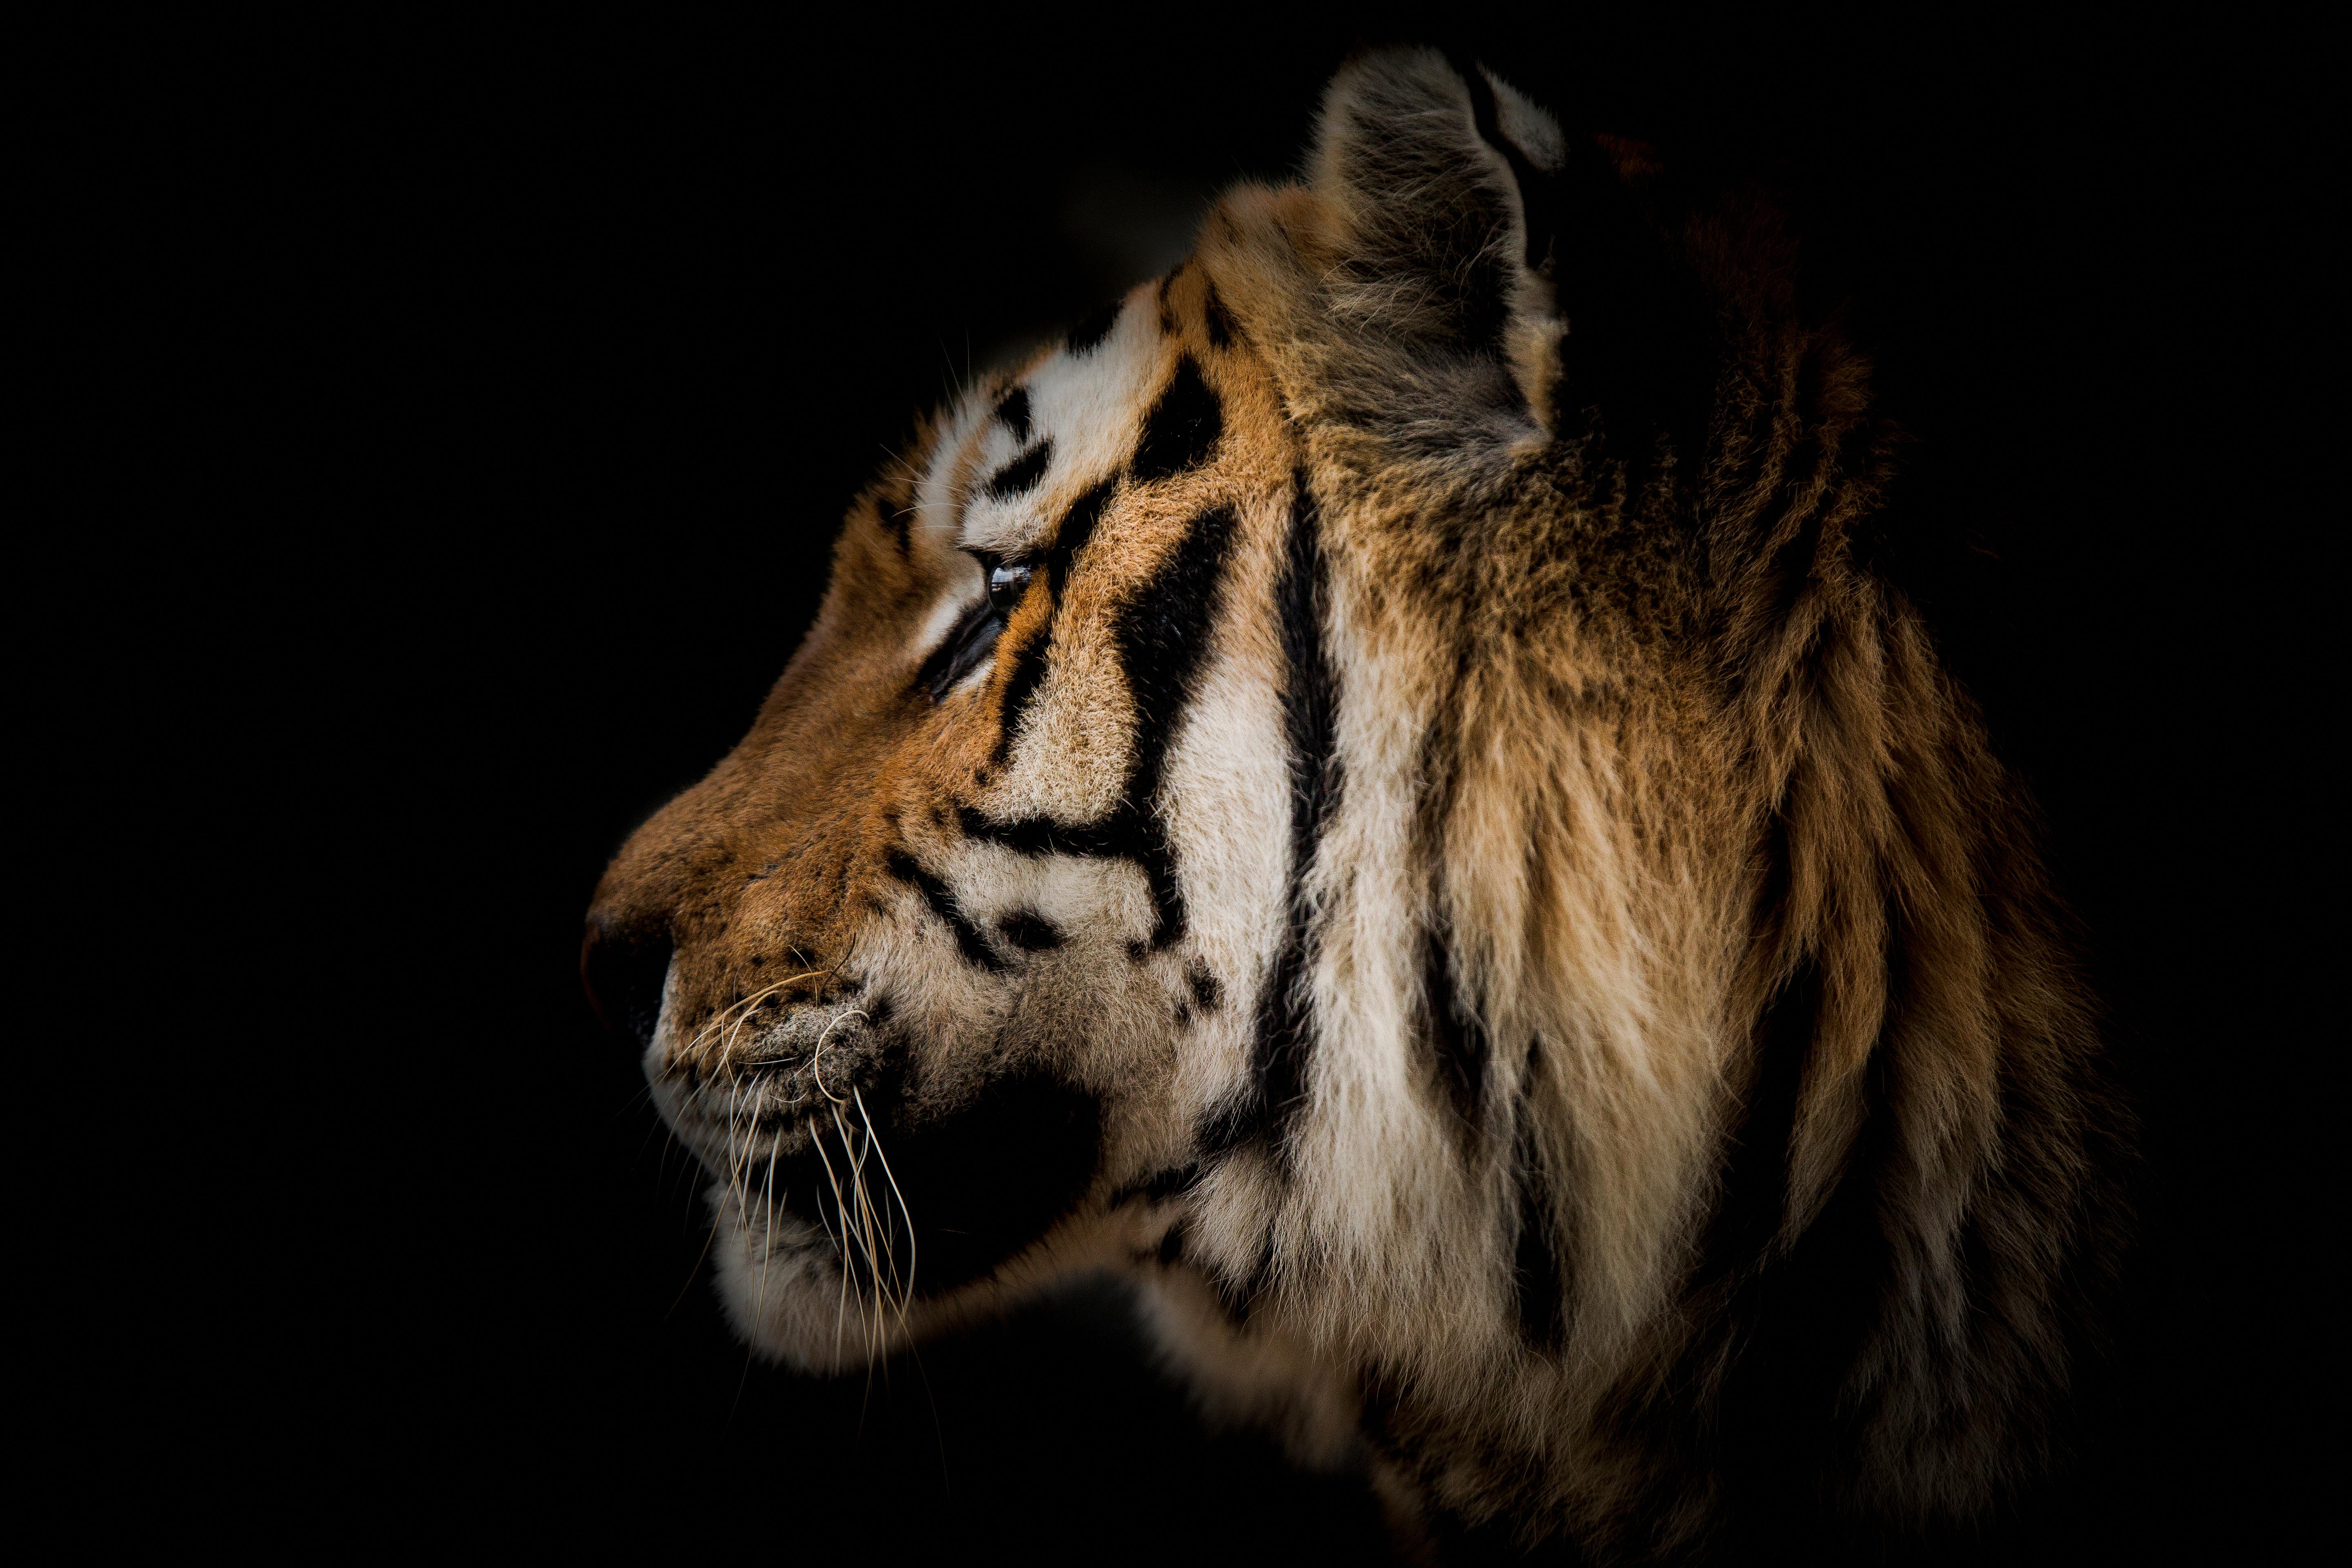 Black and White Photograph Shane Russeck - Photographie tigre 36x48 - Photographie d'art - Nature morte - Portrait de tigre - Beaux-arts